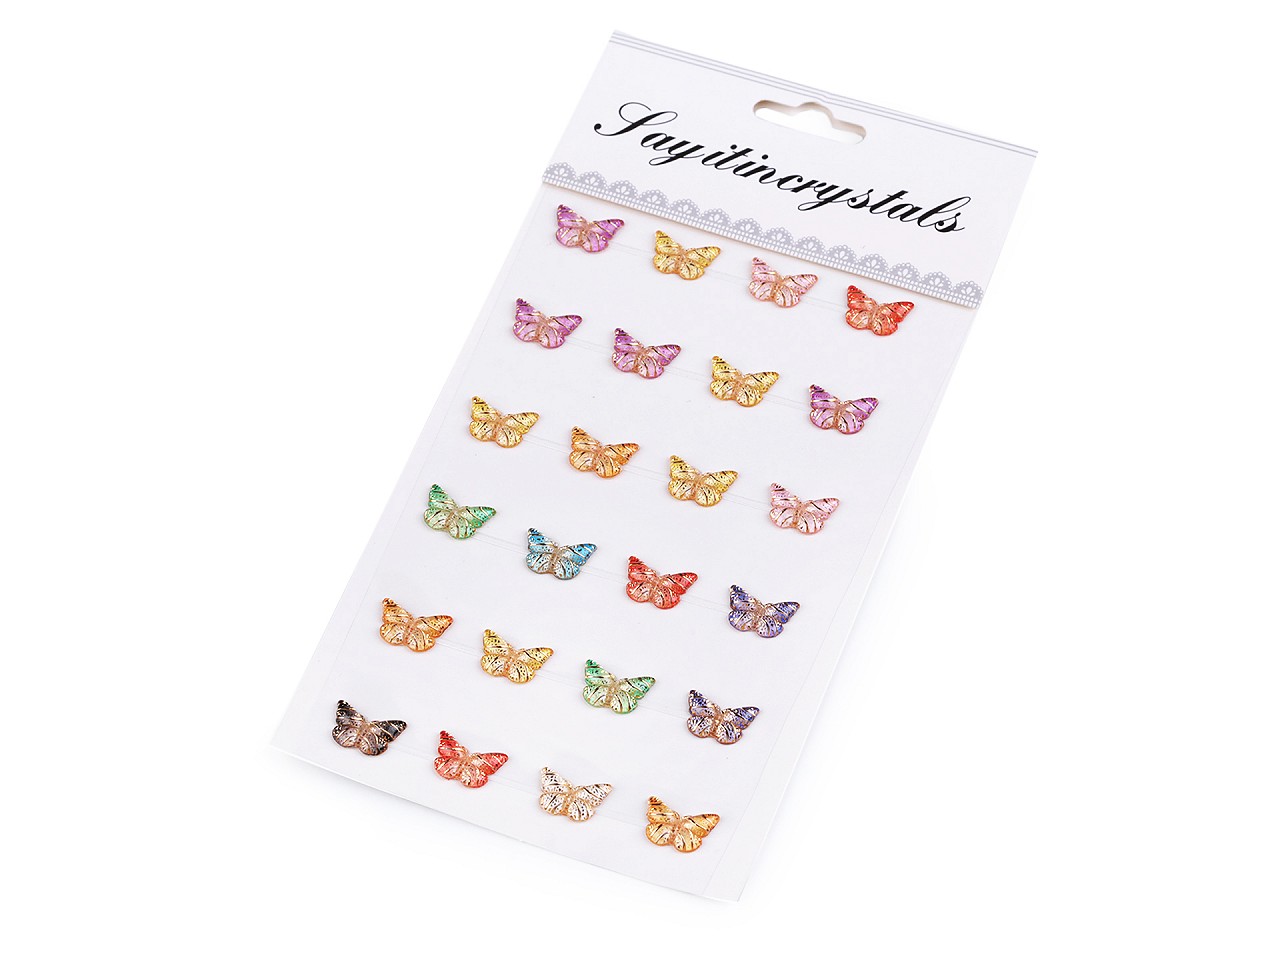 Textillux.sk - produkt Samolepiace motýliky na lepiacom prúžku